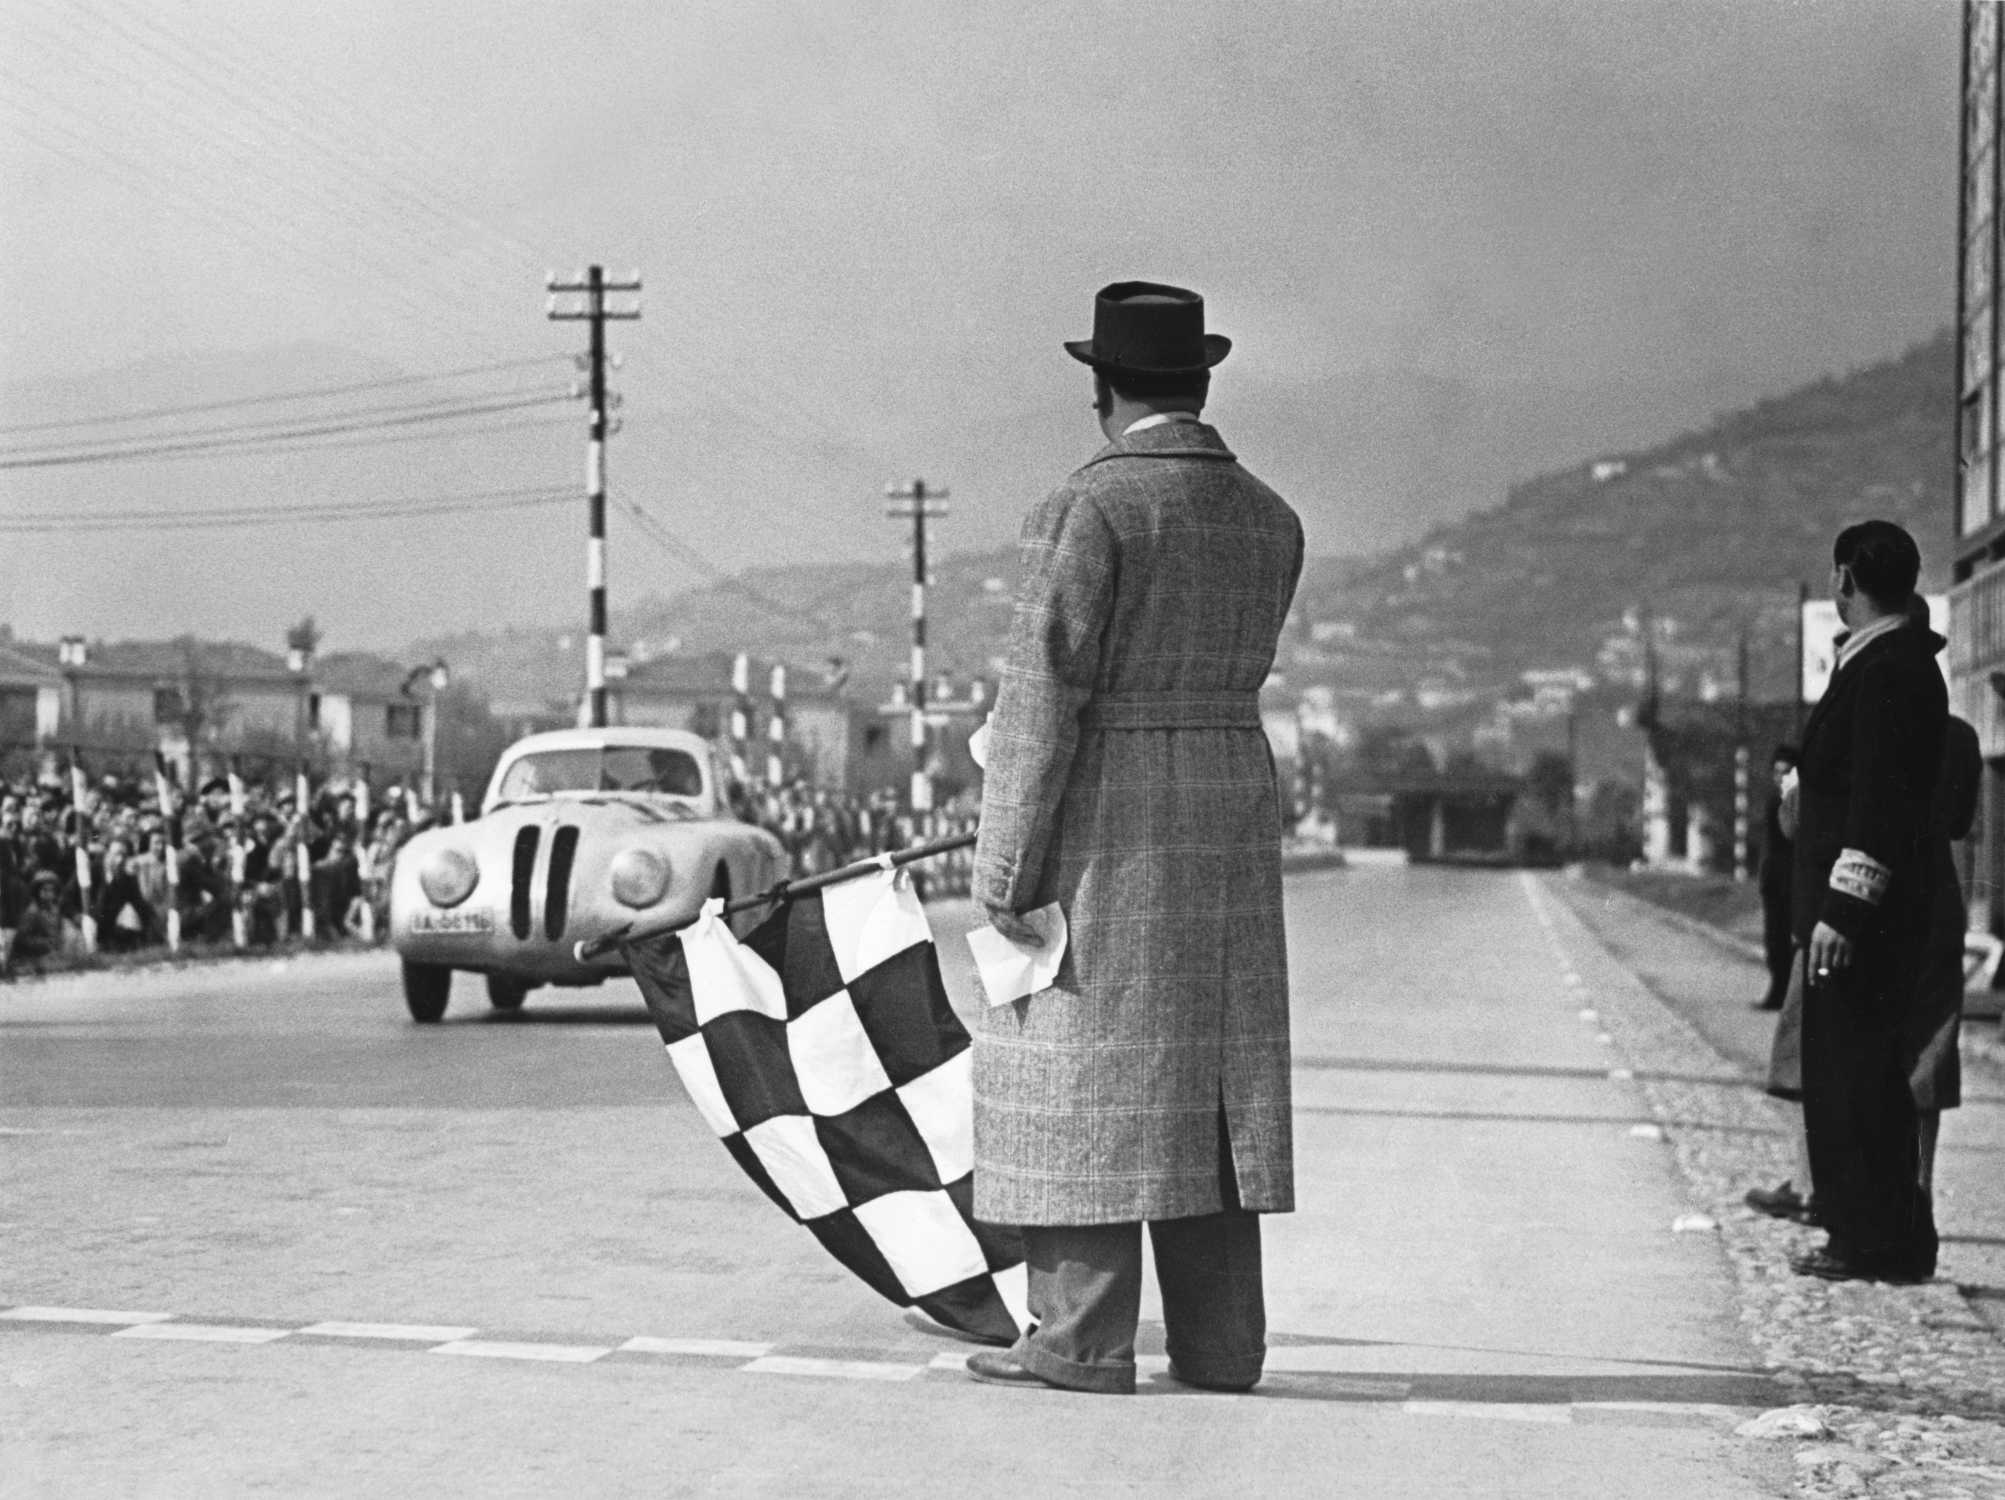 Crossing the finishing-tape at the 1st Italian Mille Miglia Grand Prix at Brescia, April 28, 1940 (03/2010)